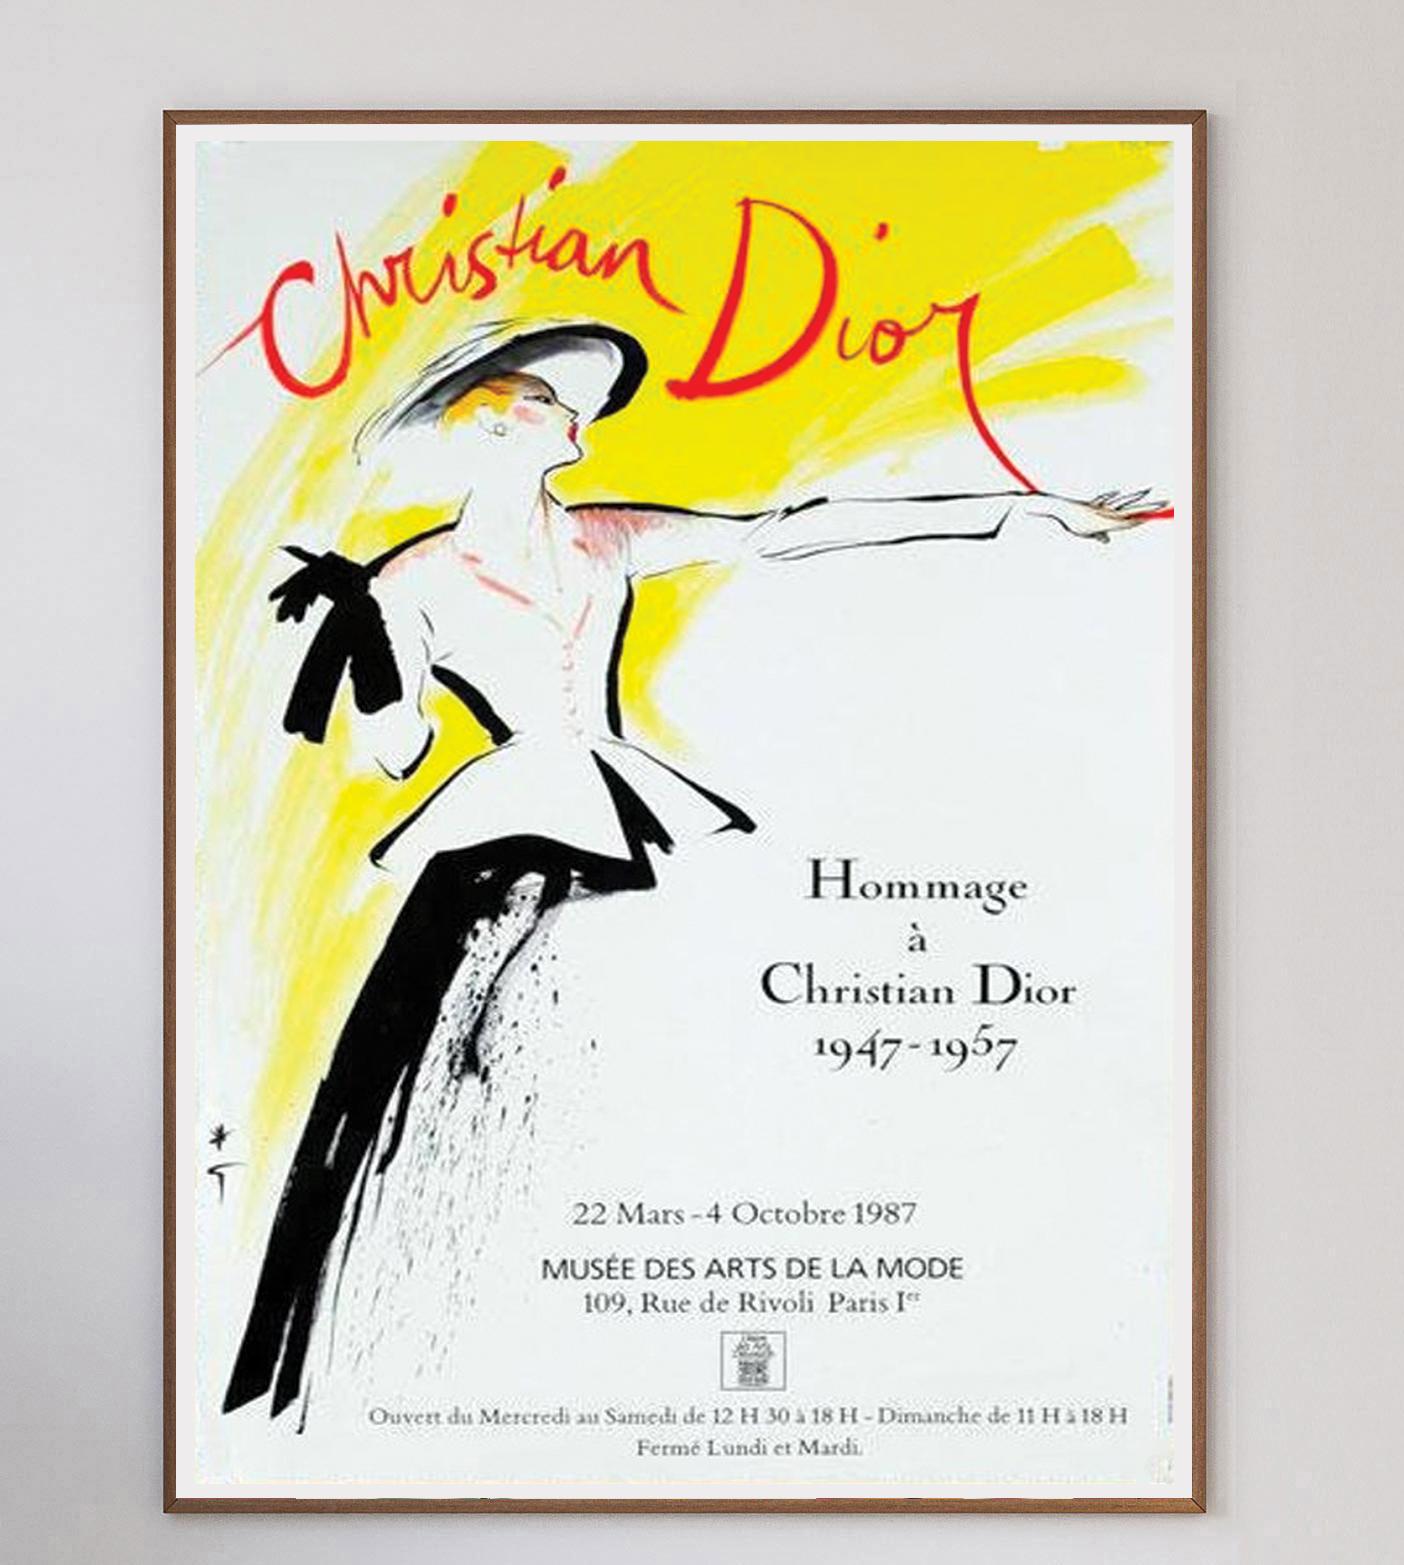 Dieses atemberaubende Plakat der Pariser Ausstellung von 1987, die ein Jahrzehnt des Schaffens von Dior zwischen 1947 und 1957 zelebriert, ist ein Werk des unglaublichen Plakatkünstlers Rene Gruau. Gruau, der für seine zahlreichen Kollaborationen